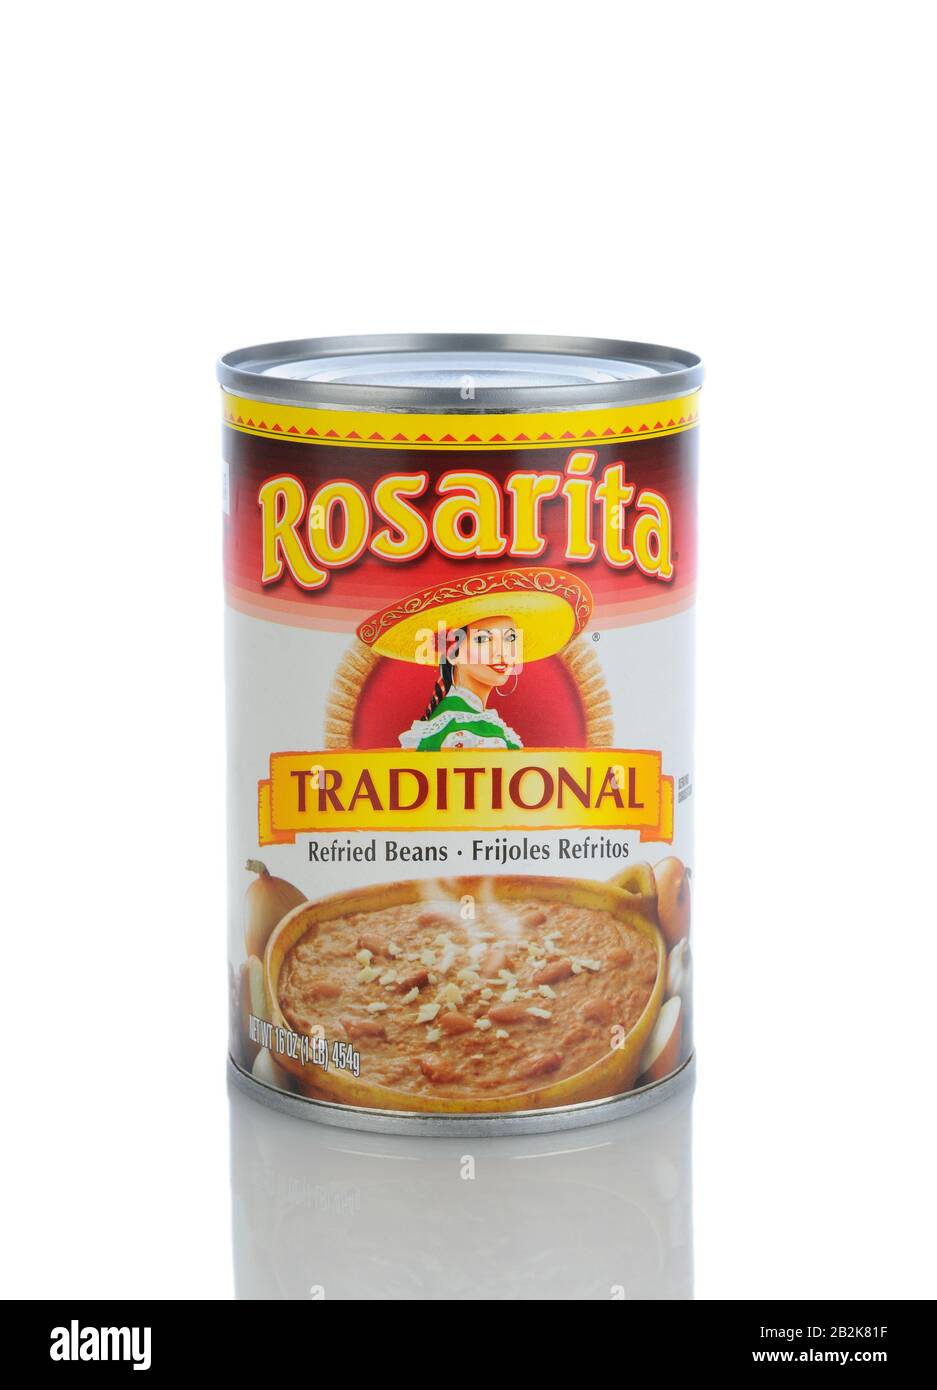 Irvine, CA - 11. Januar 2013: Eine Dose Rosarita Mit Traditionellen Gebratenen Bohnen. Rosita Mexican Food Products wurde in den vierziger Jahren von Pedro Gue gegründet Stockfoto